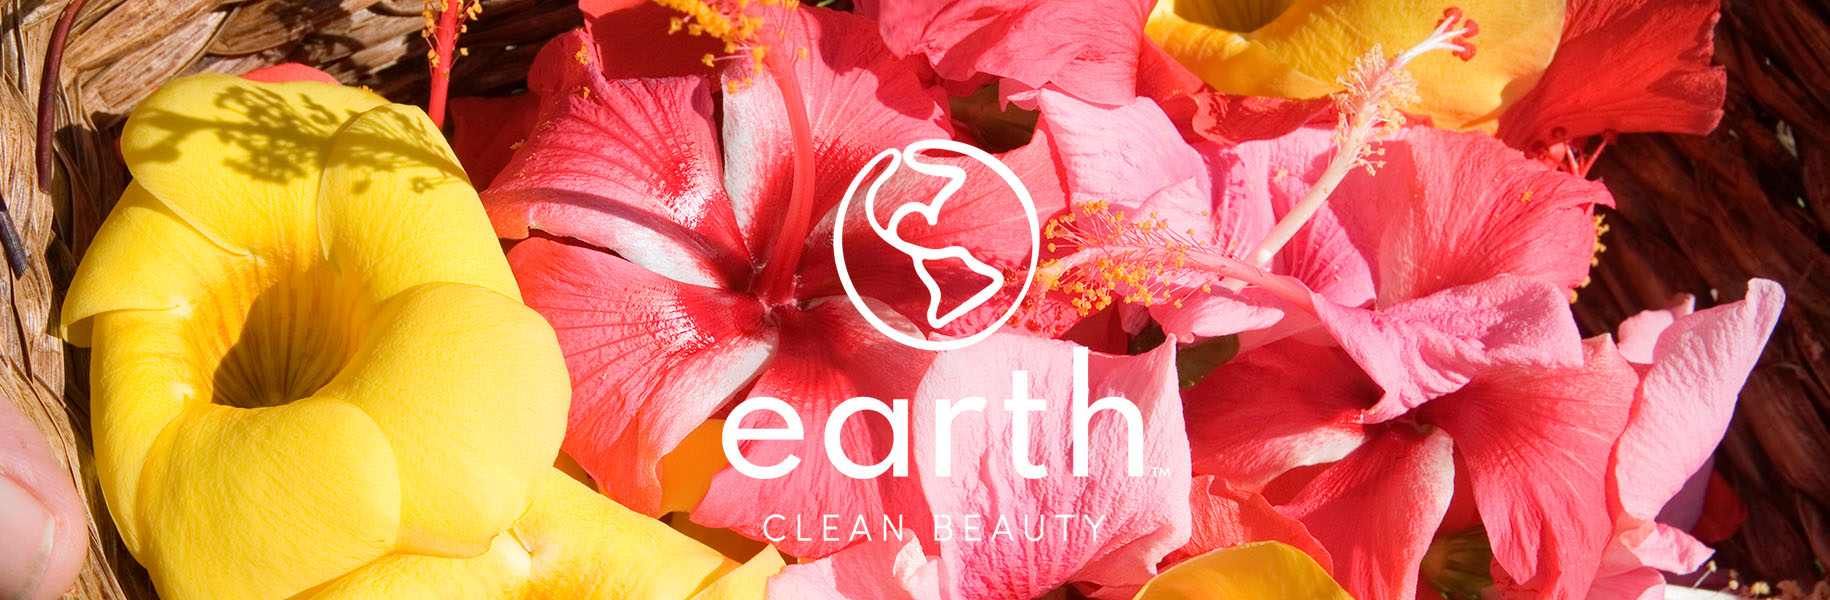 Earth - Clean Beauty